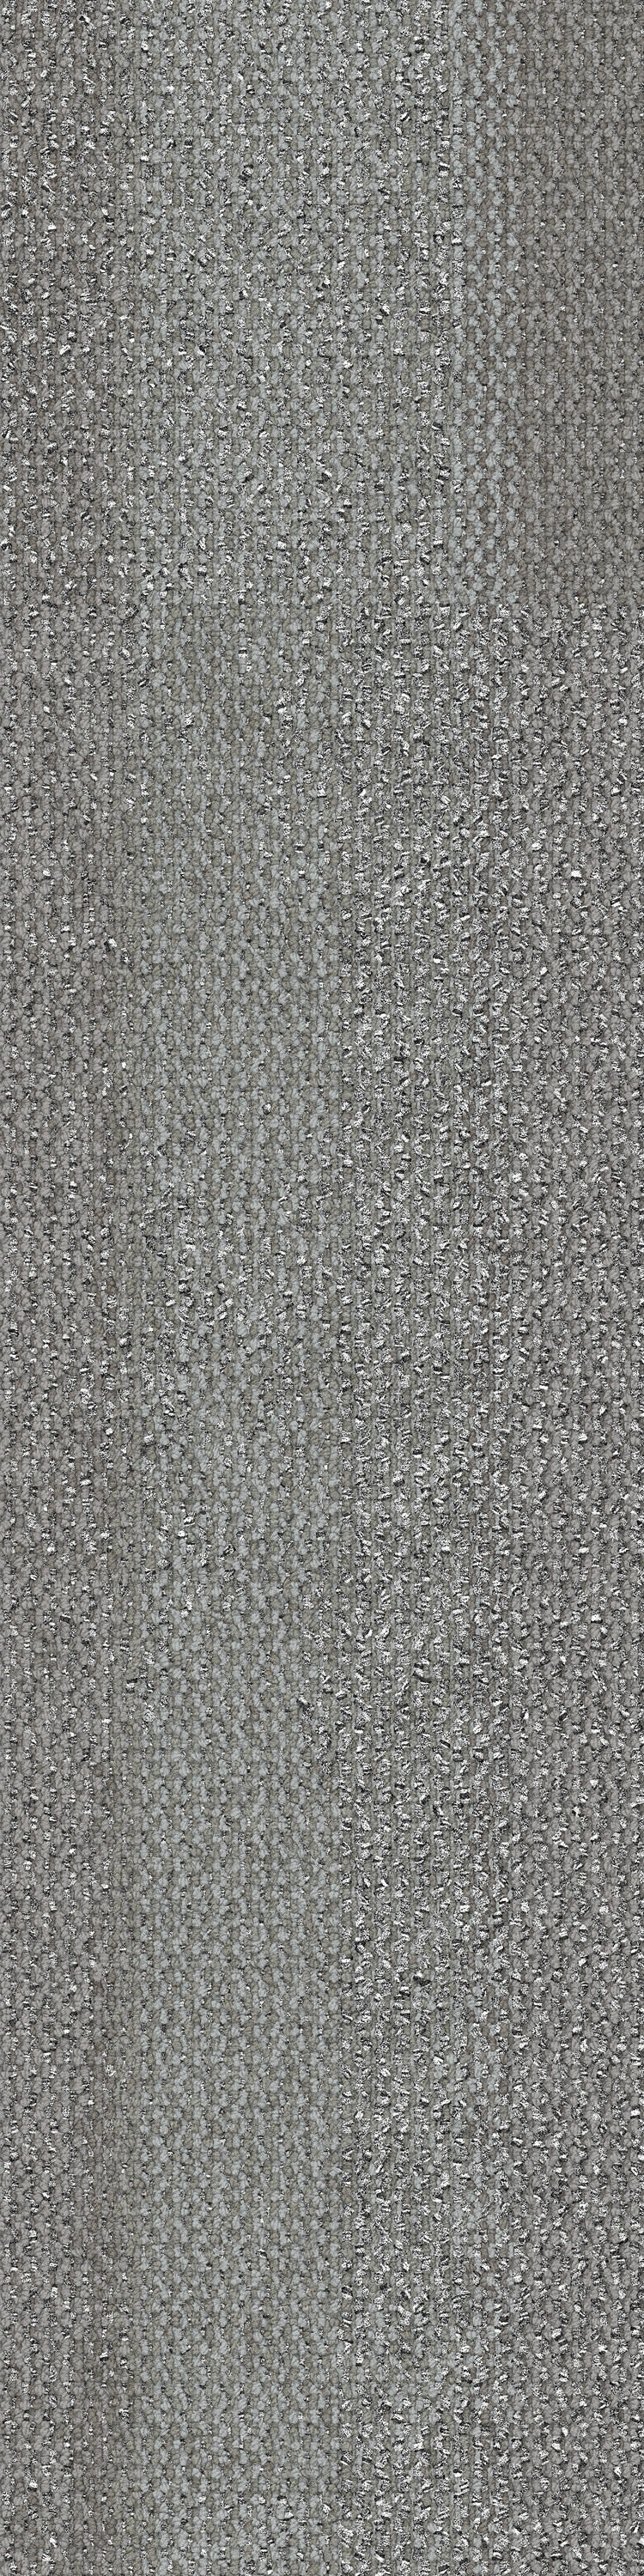 9310-005-000 Slate Grey 